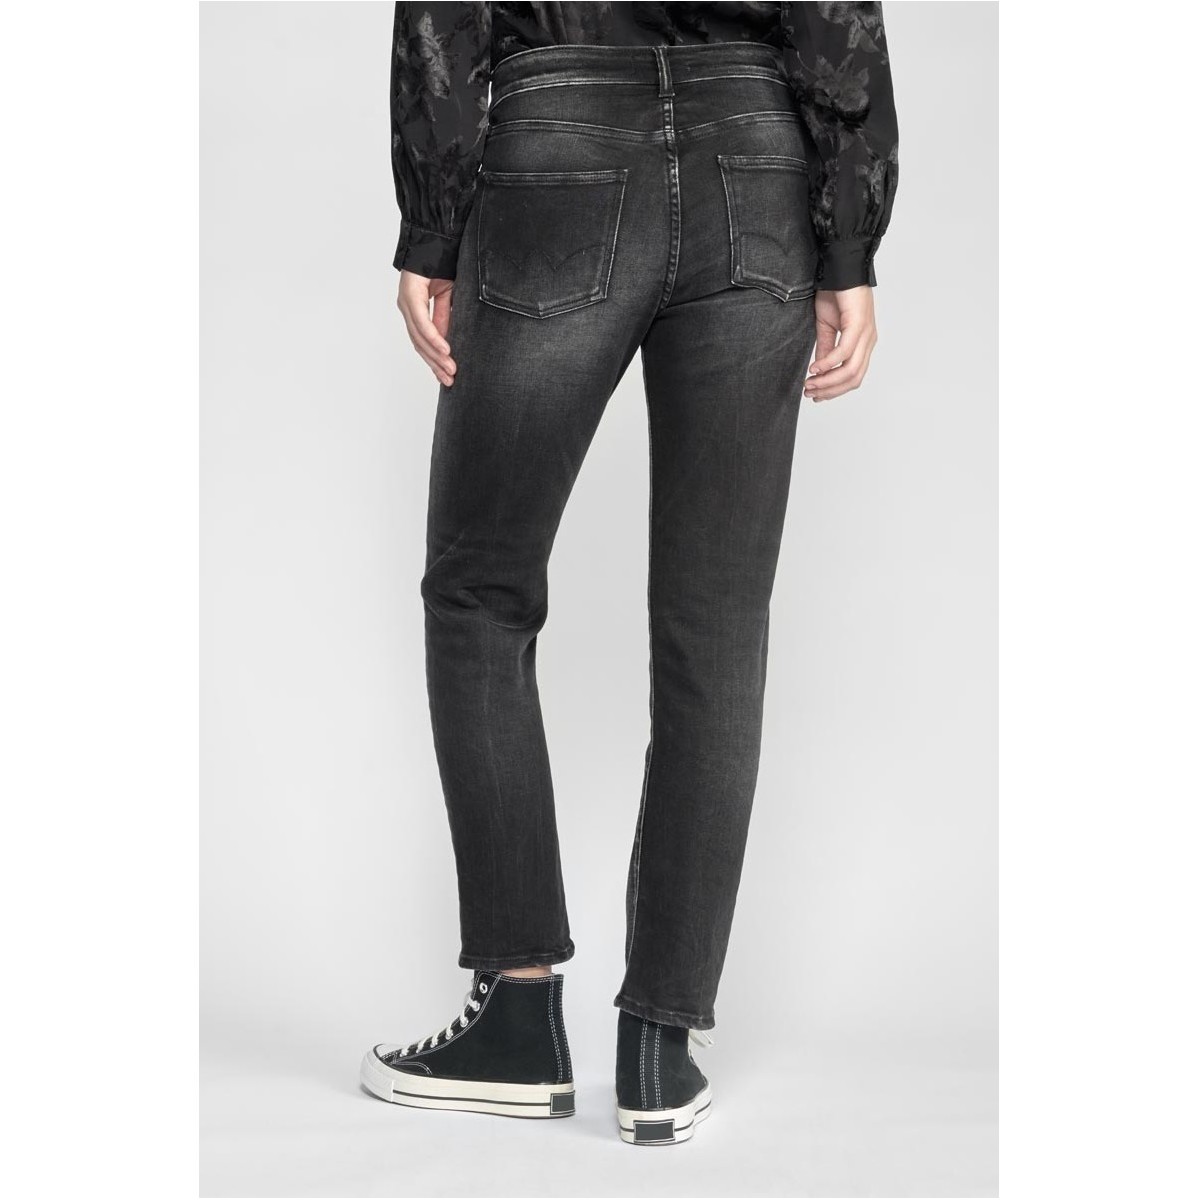 Le Temps des Cerises Noir Basic 400/17 mom taille haute 7/8ème jeans noir RtC3w9cT